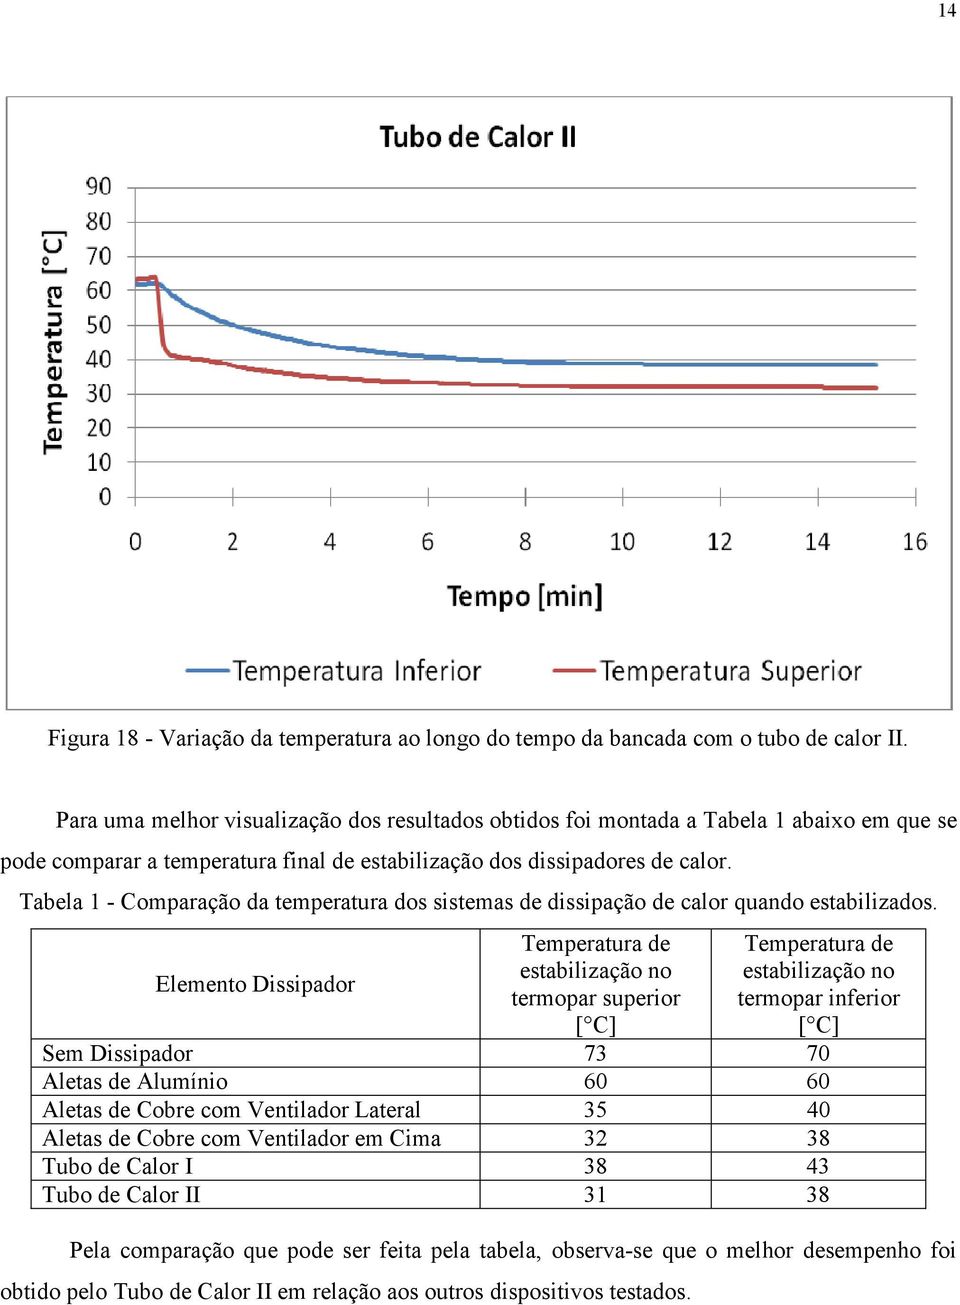 Tabela 1 - Comparação da temperatura dos sistemas de dissipação de calor quando estabilizados.